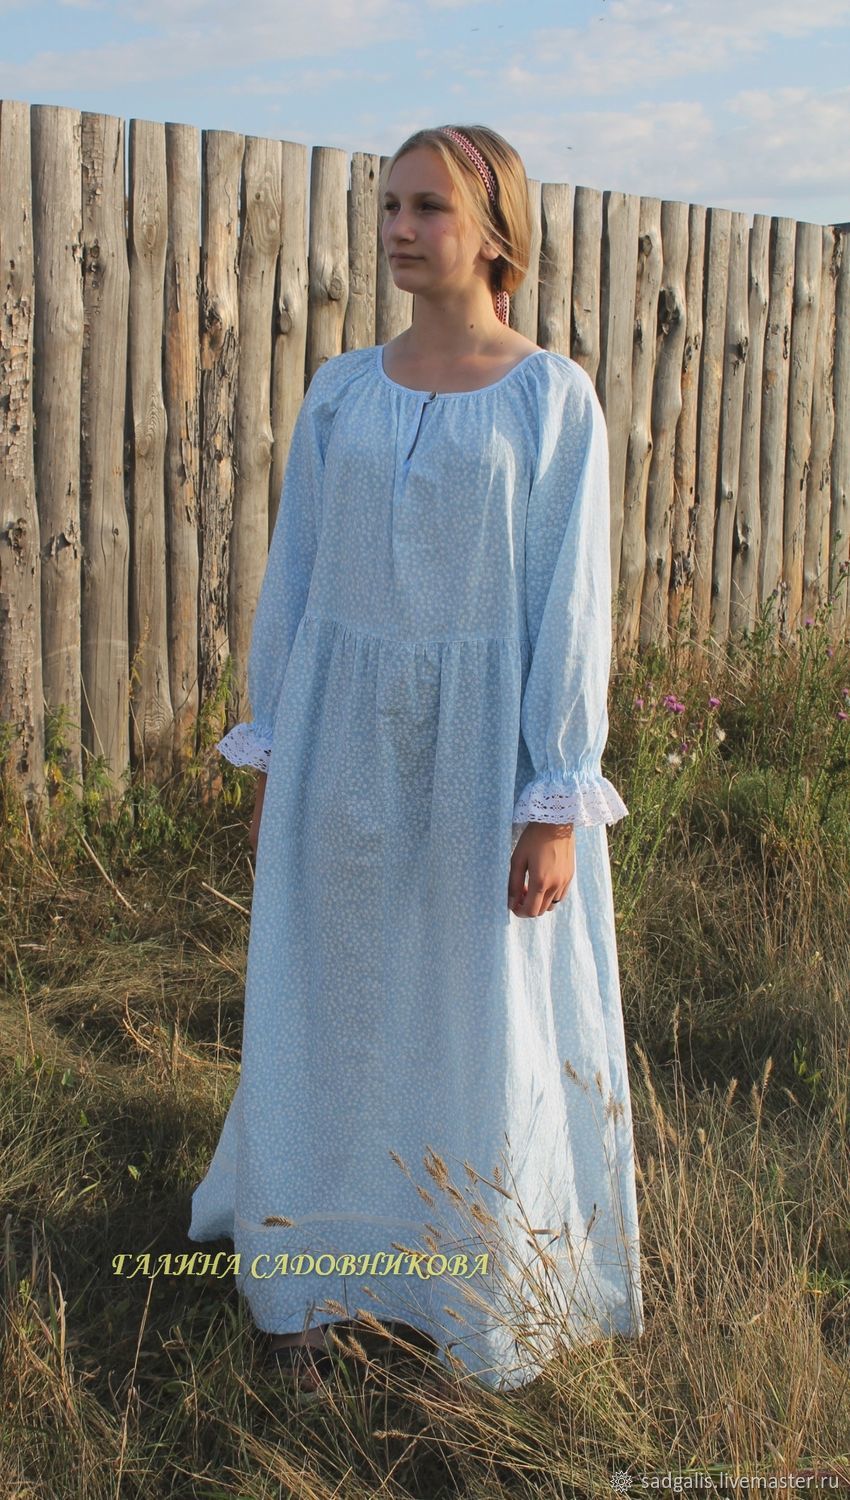 Рубаха народная женская.Длинная, Народные рубахи, Борское,  Фото №1